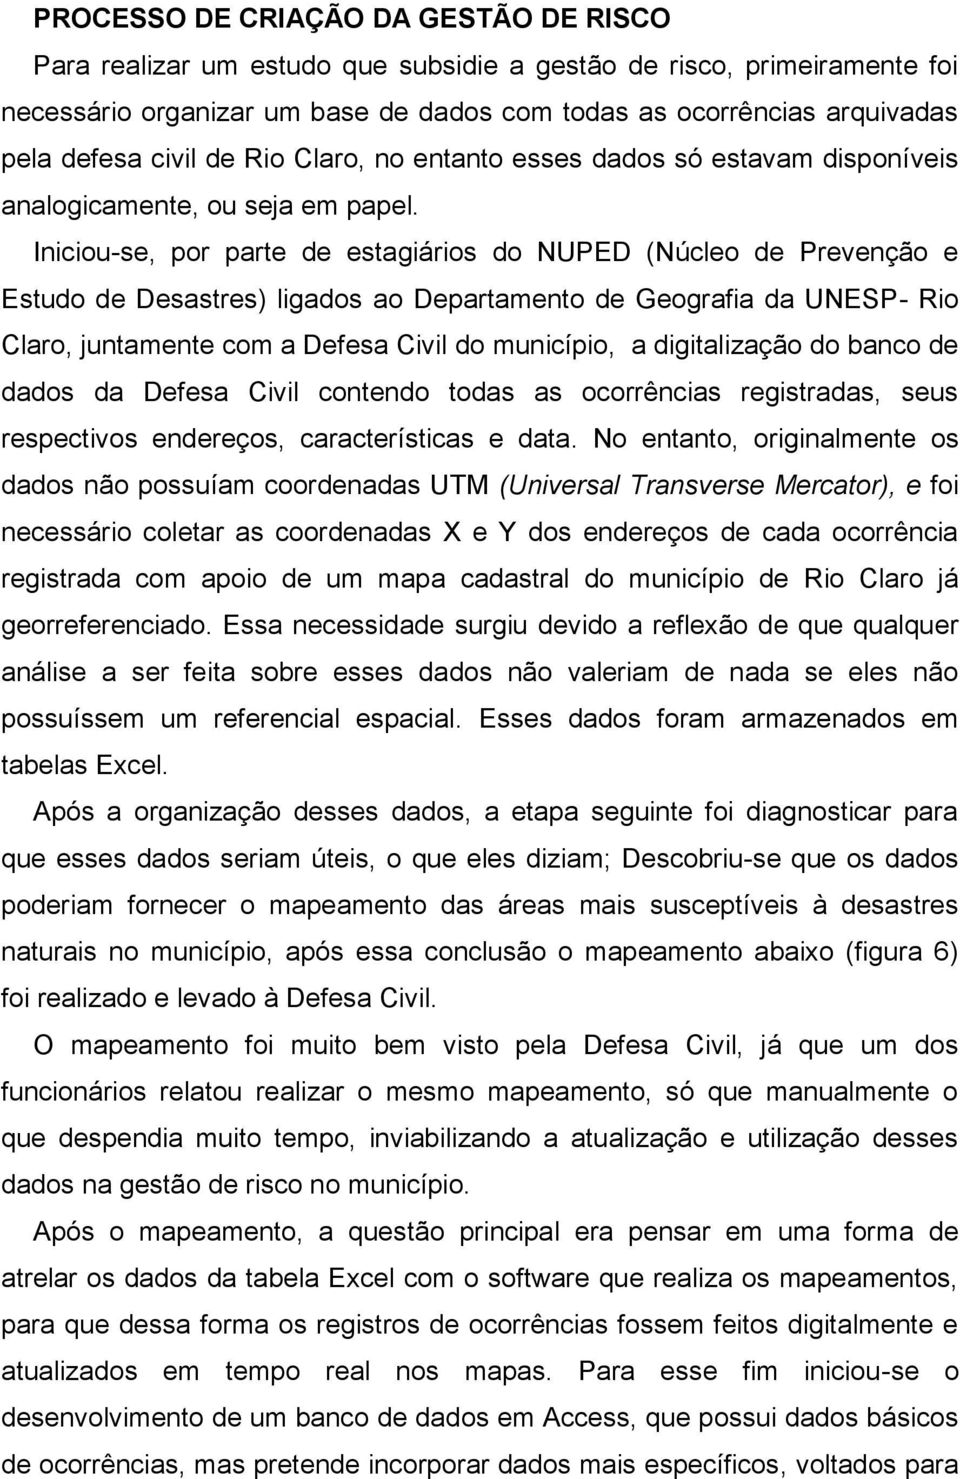 Iniciou-se, por parte de estagiários do NUPED (Núcleo de Prevenção e Estudo de Desastres) ligados ao Departamento de Geografia da UNESP- Rio Claro, juntamente com a Defesa Civil do município, a